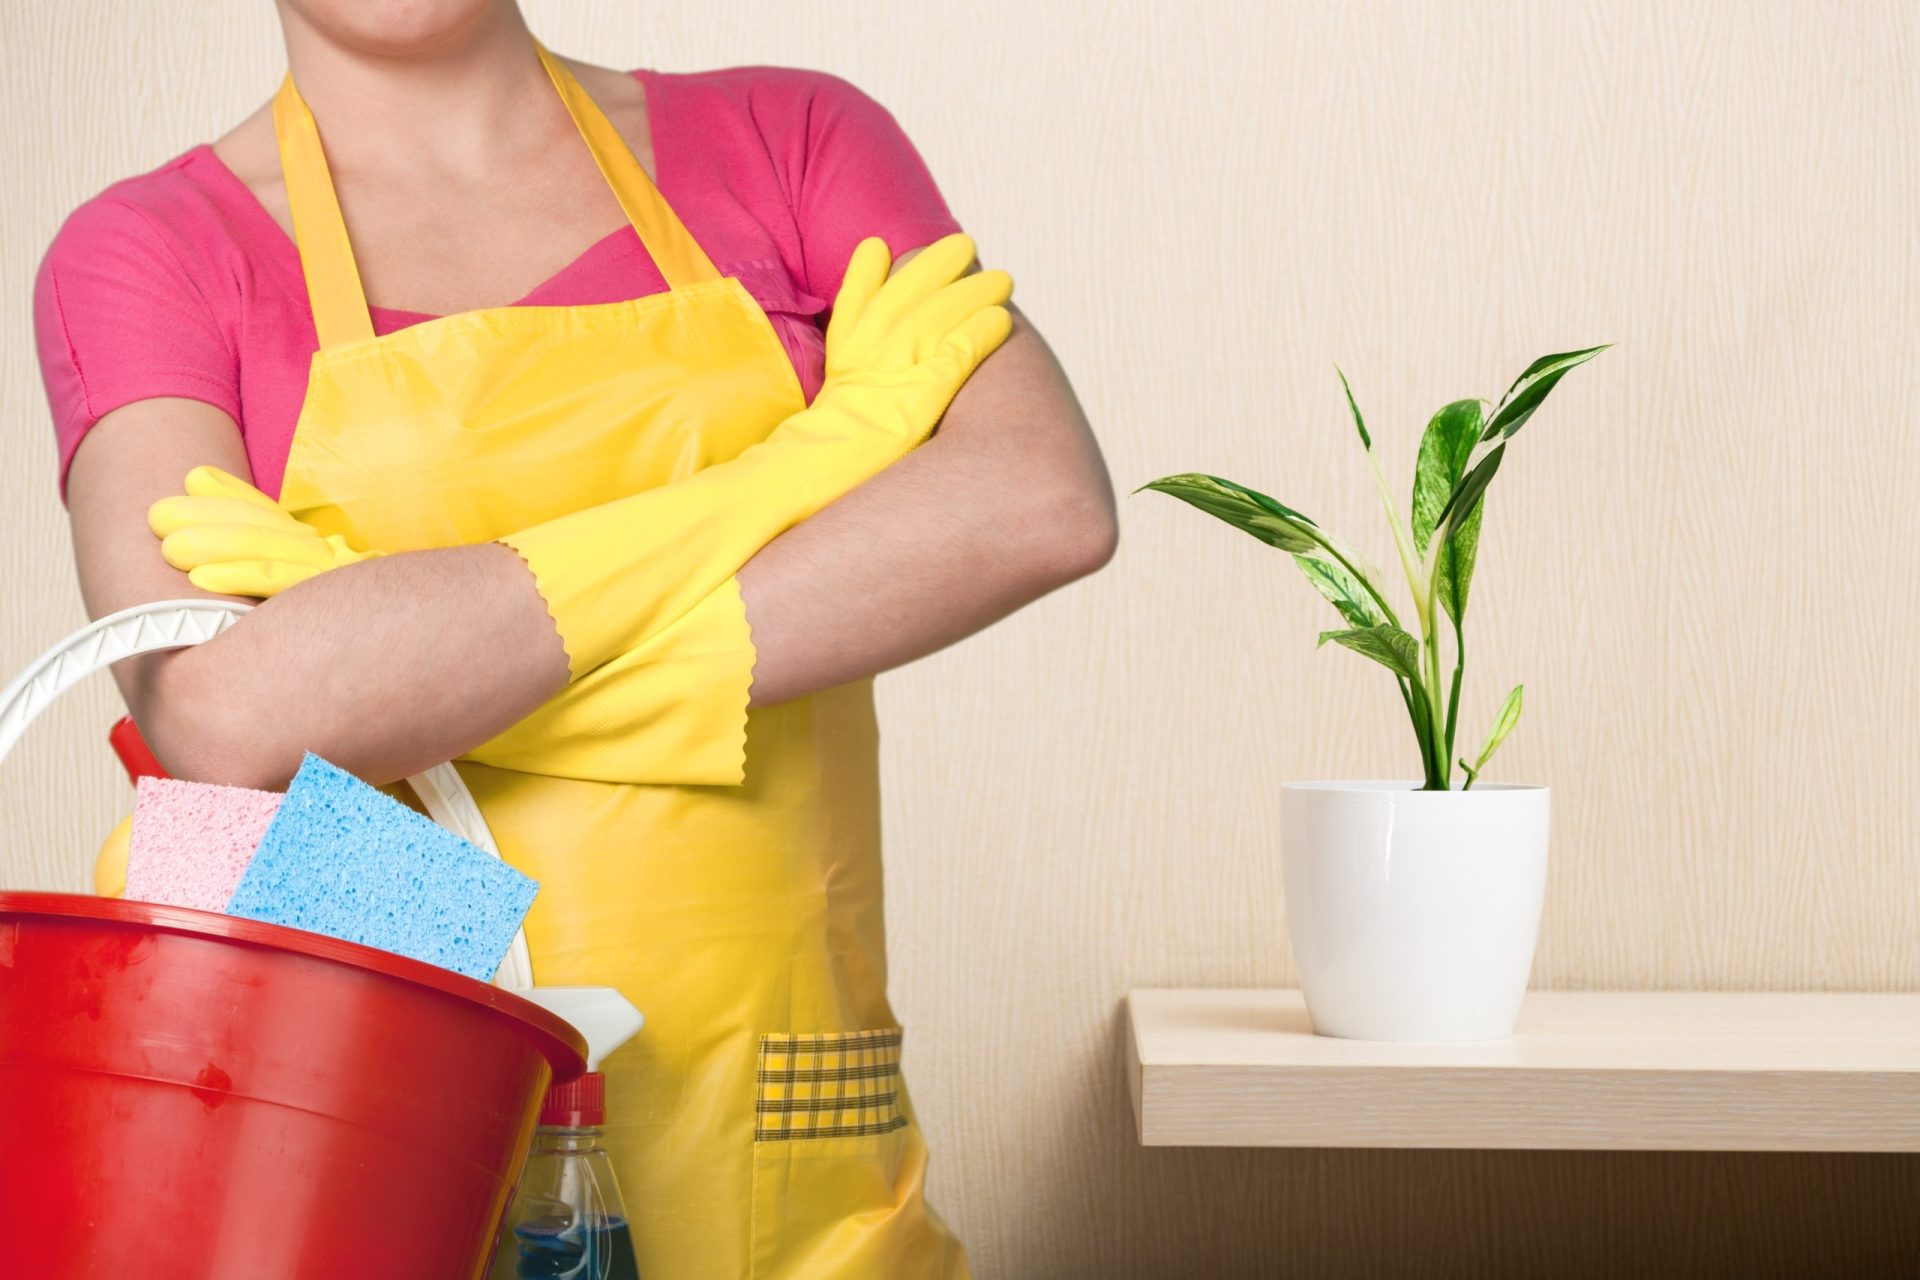 Empregados domésticos têm apenas contratos verbais e nunca sabem quanto recebem